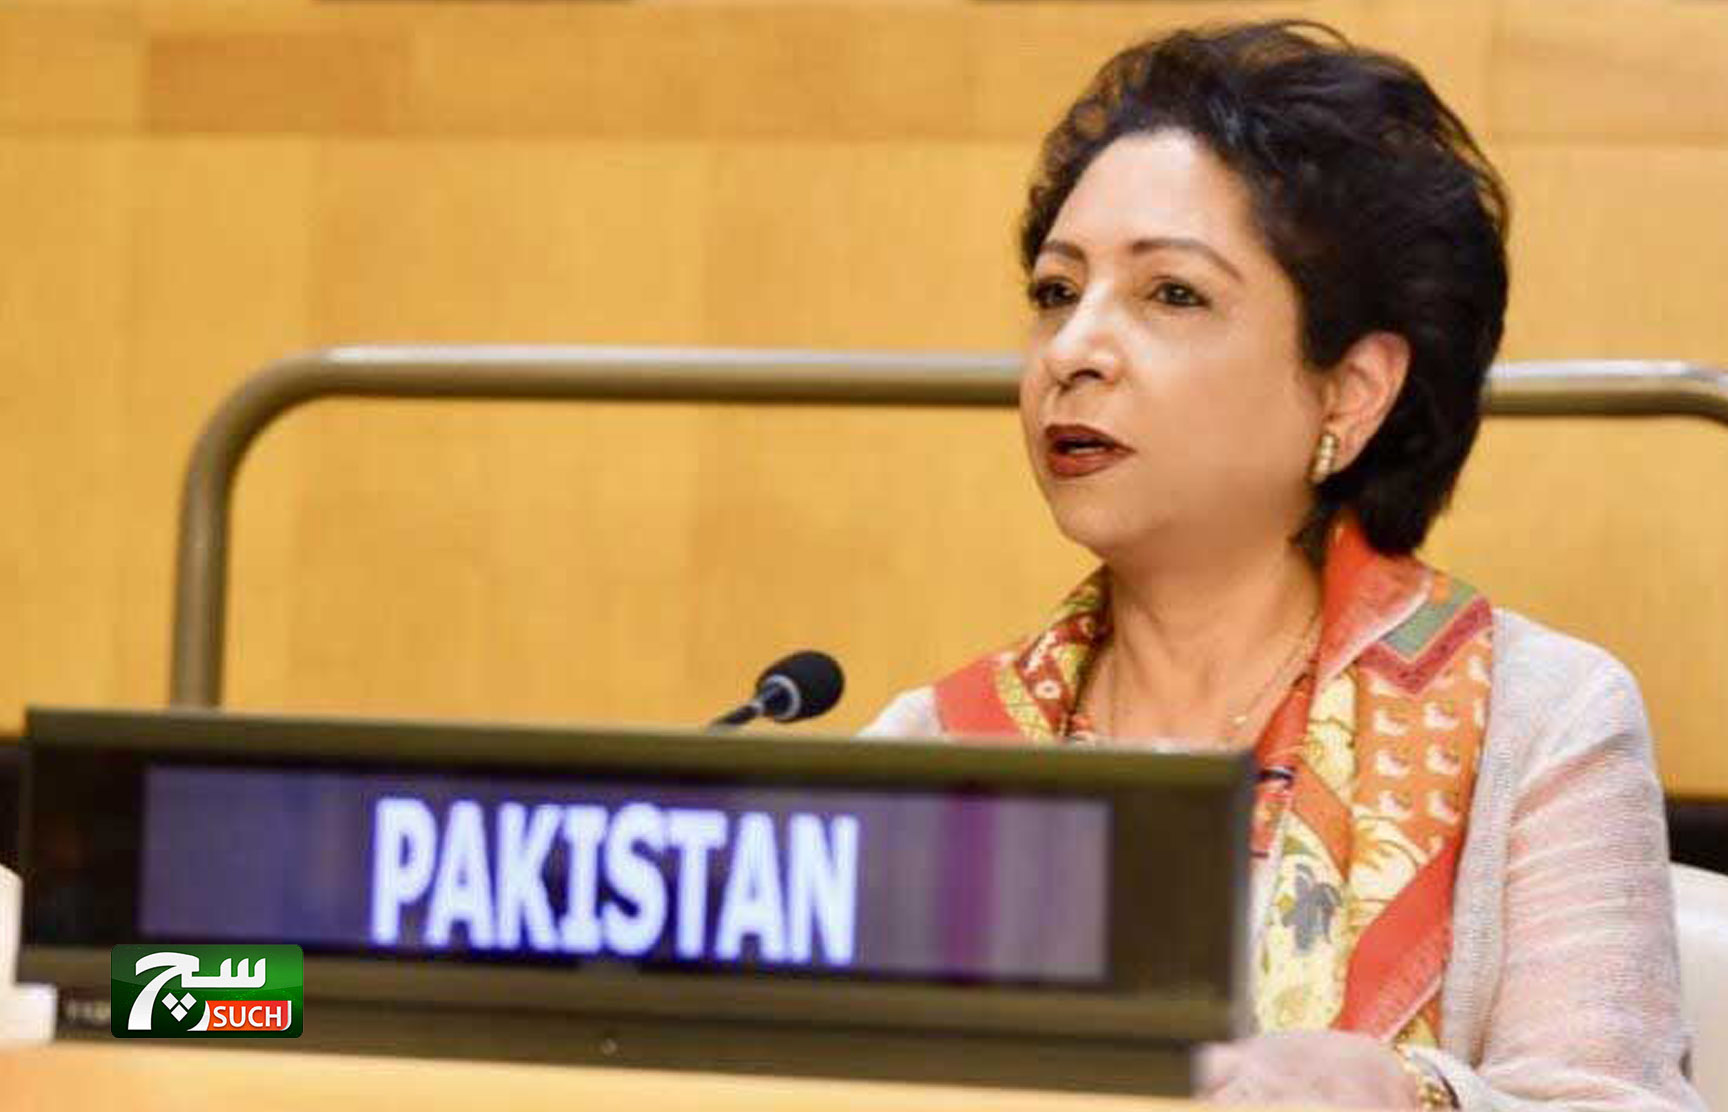 باكستان تدعو إلى تحرك الأمم المتحدة ضد الإسلاموفوبيا ، خطاب الكراهية